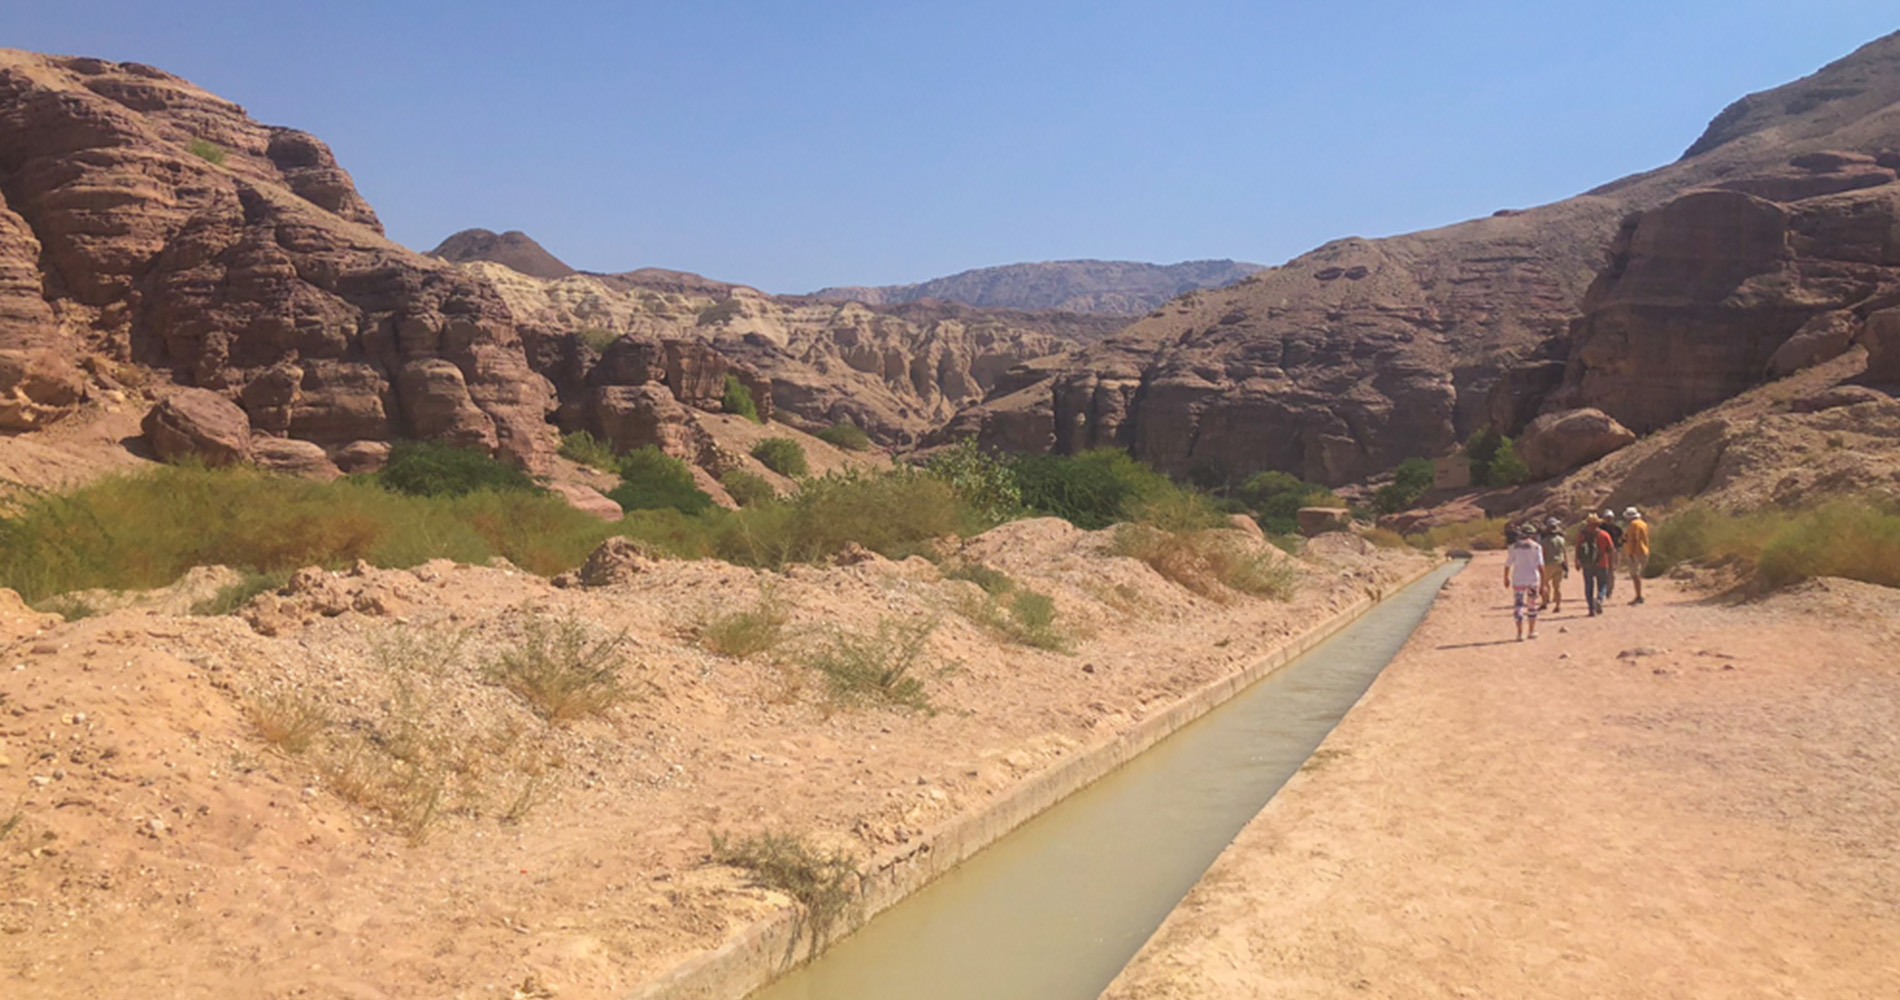 Wadi Al Hasa